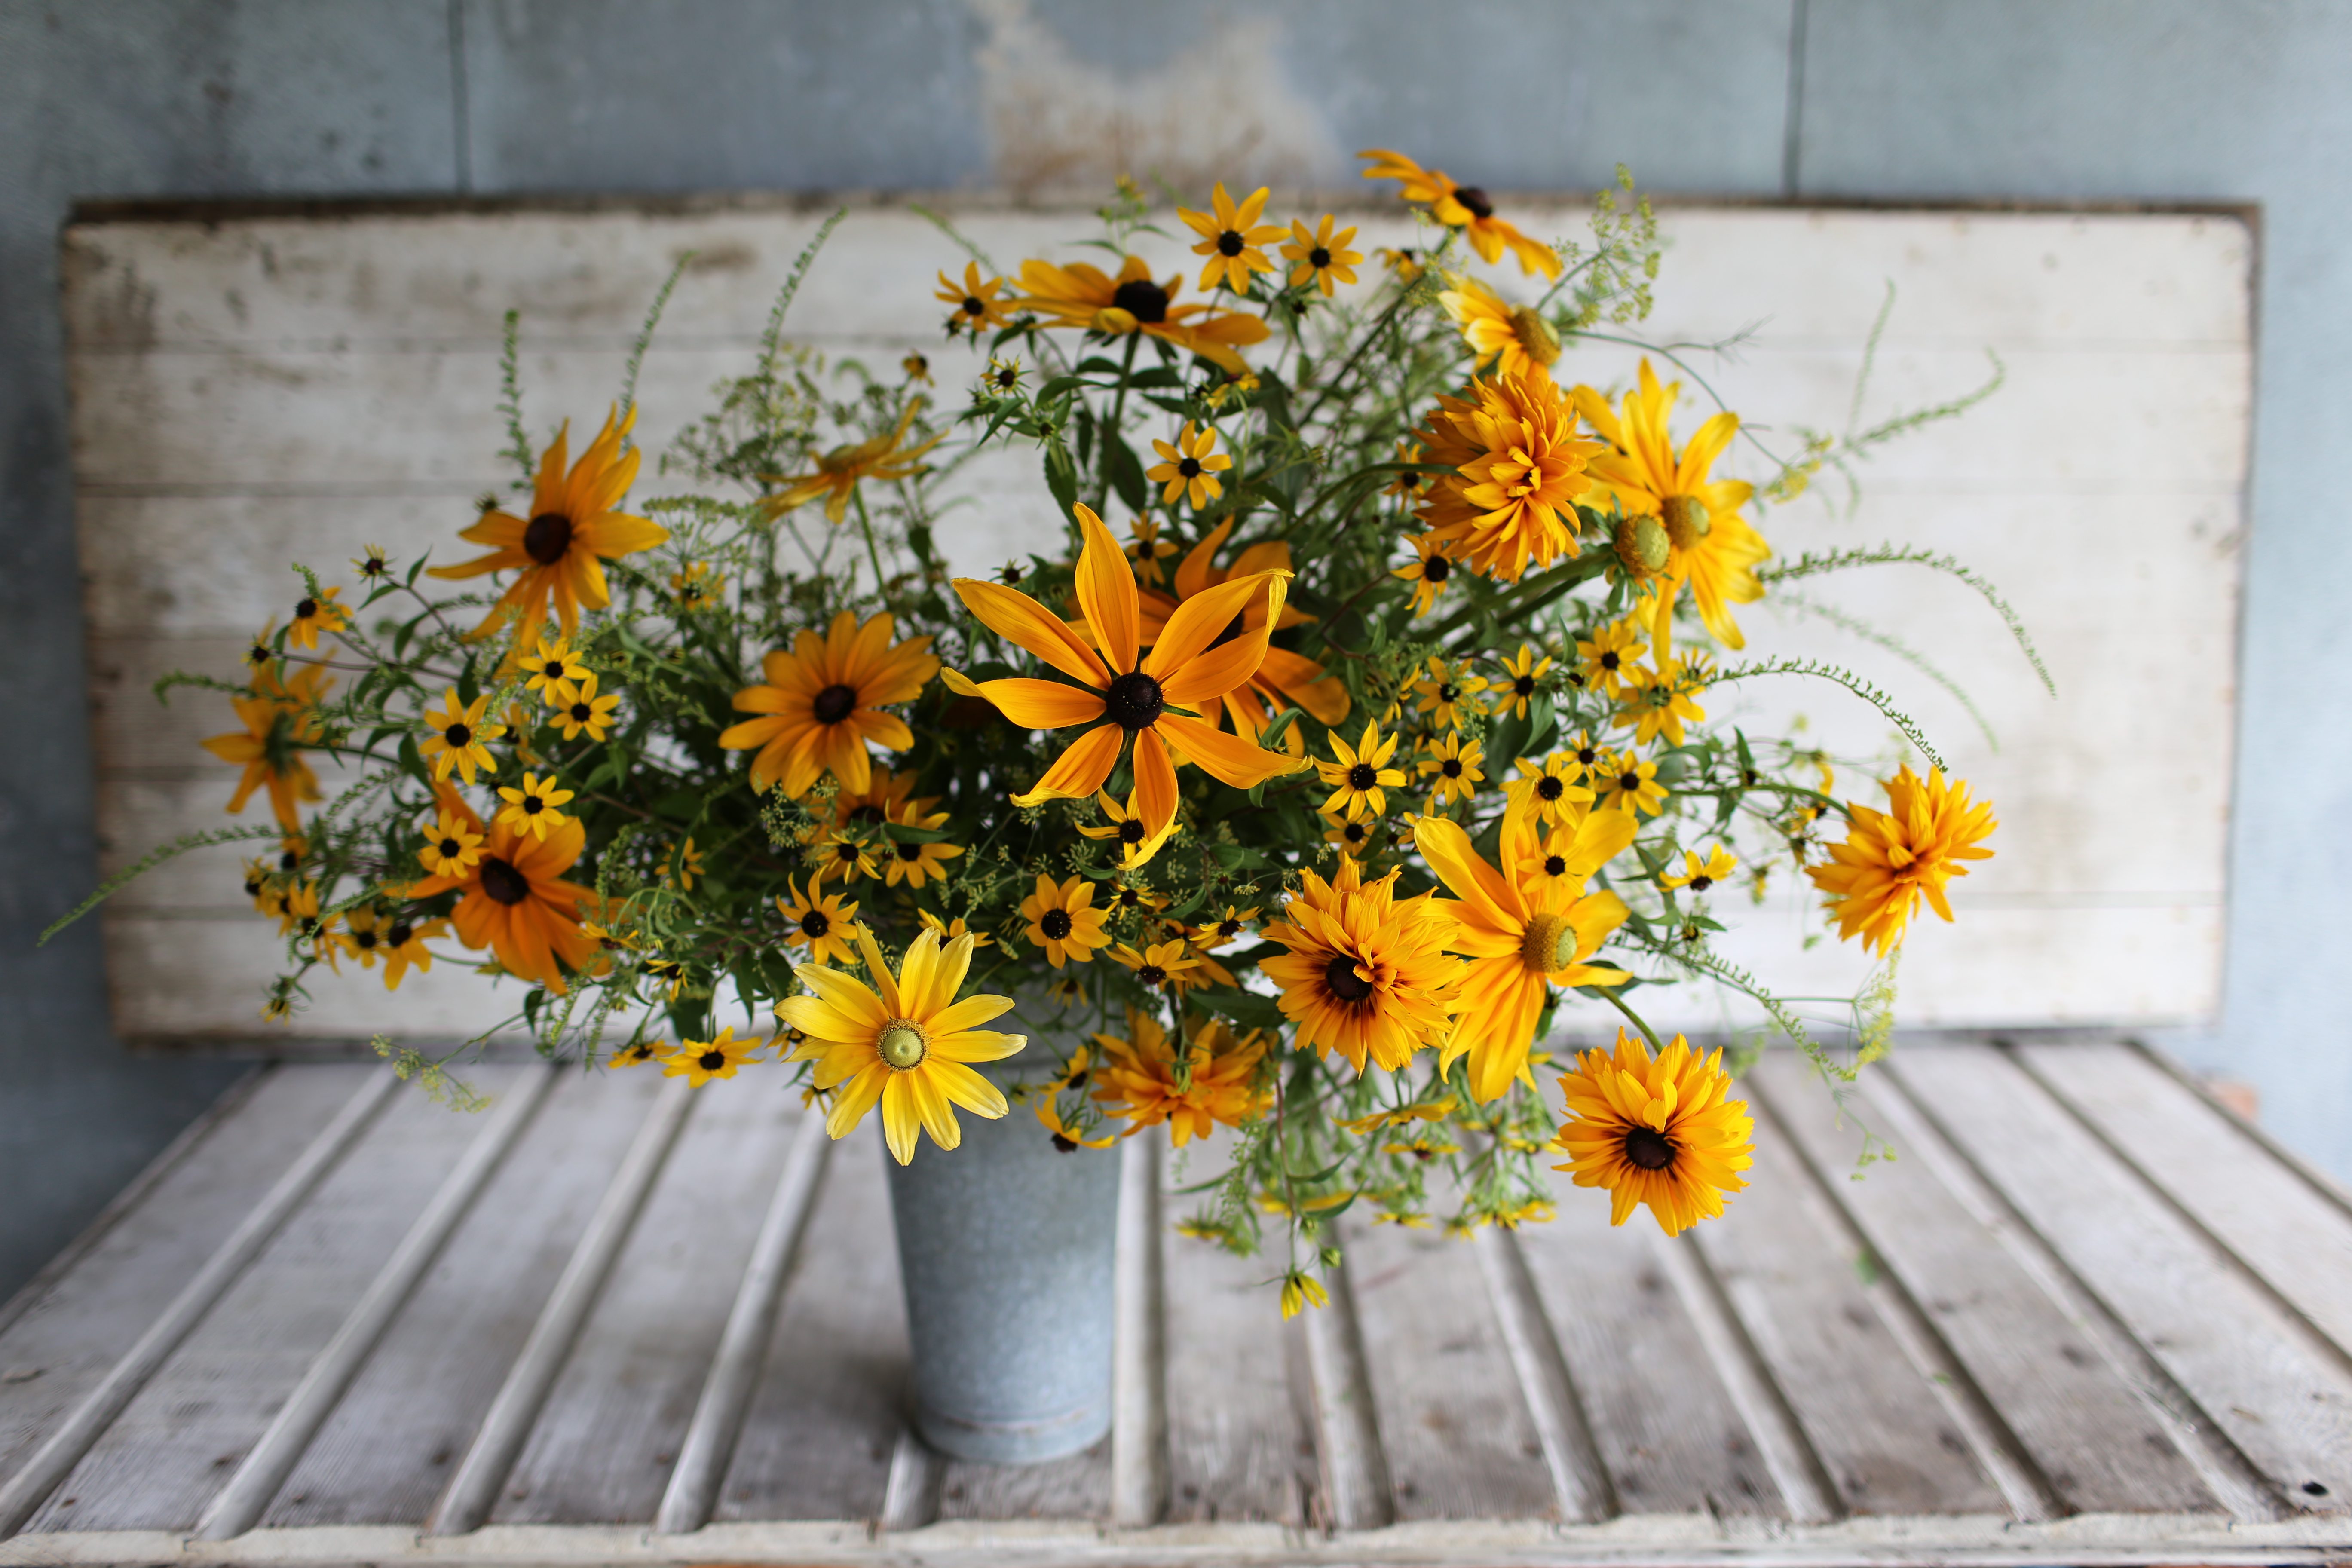 An arrangement of yellow flowers